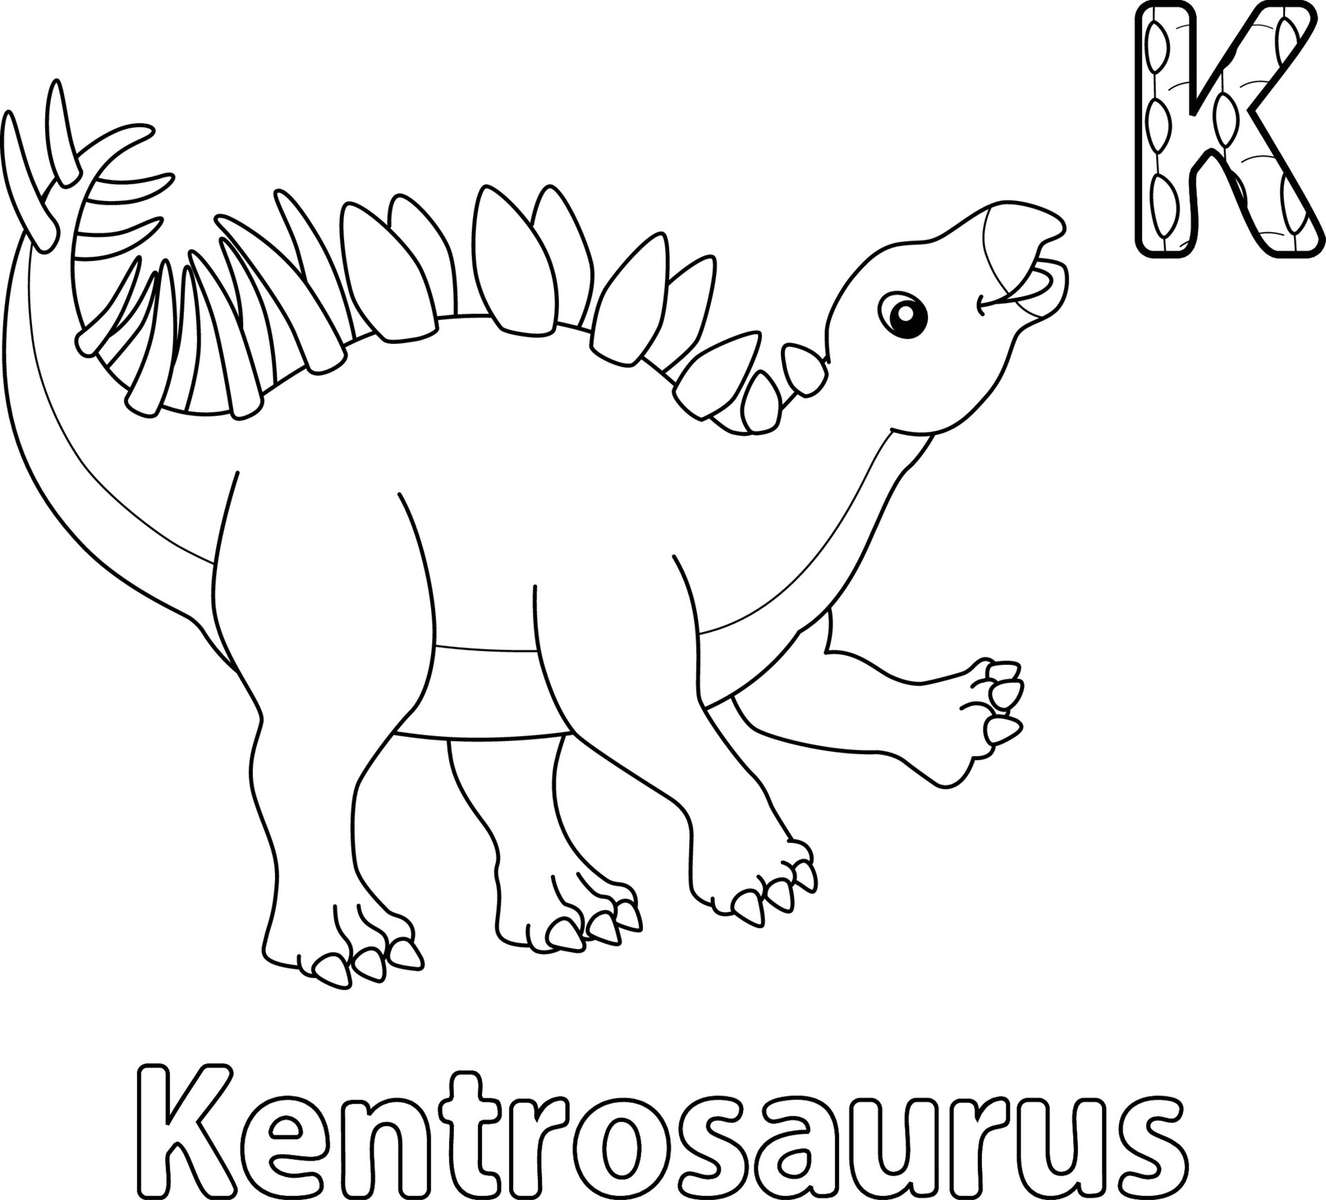 Kentrosaurus Puzzle puzzle online din fotografie